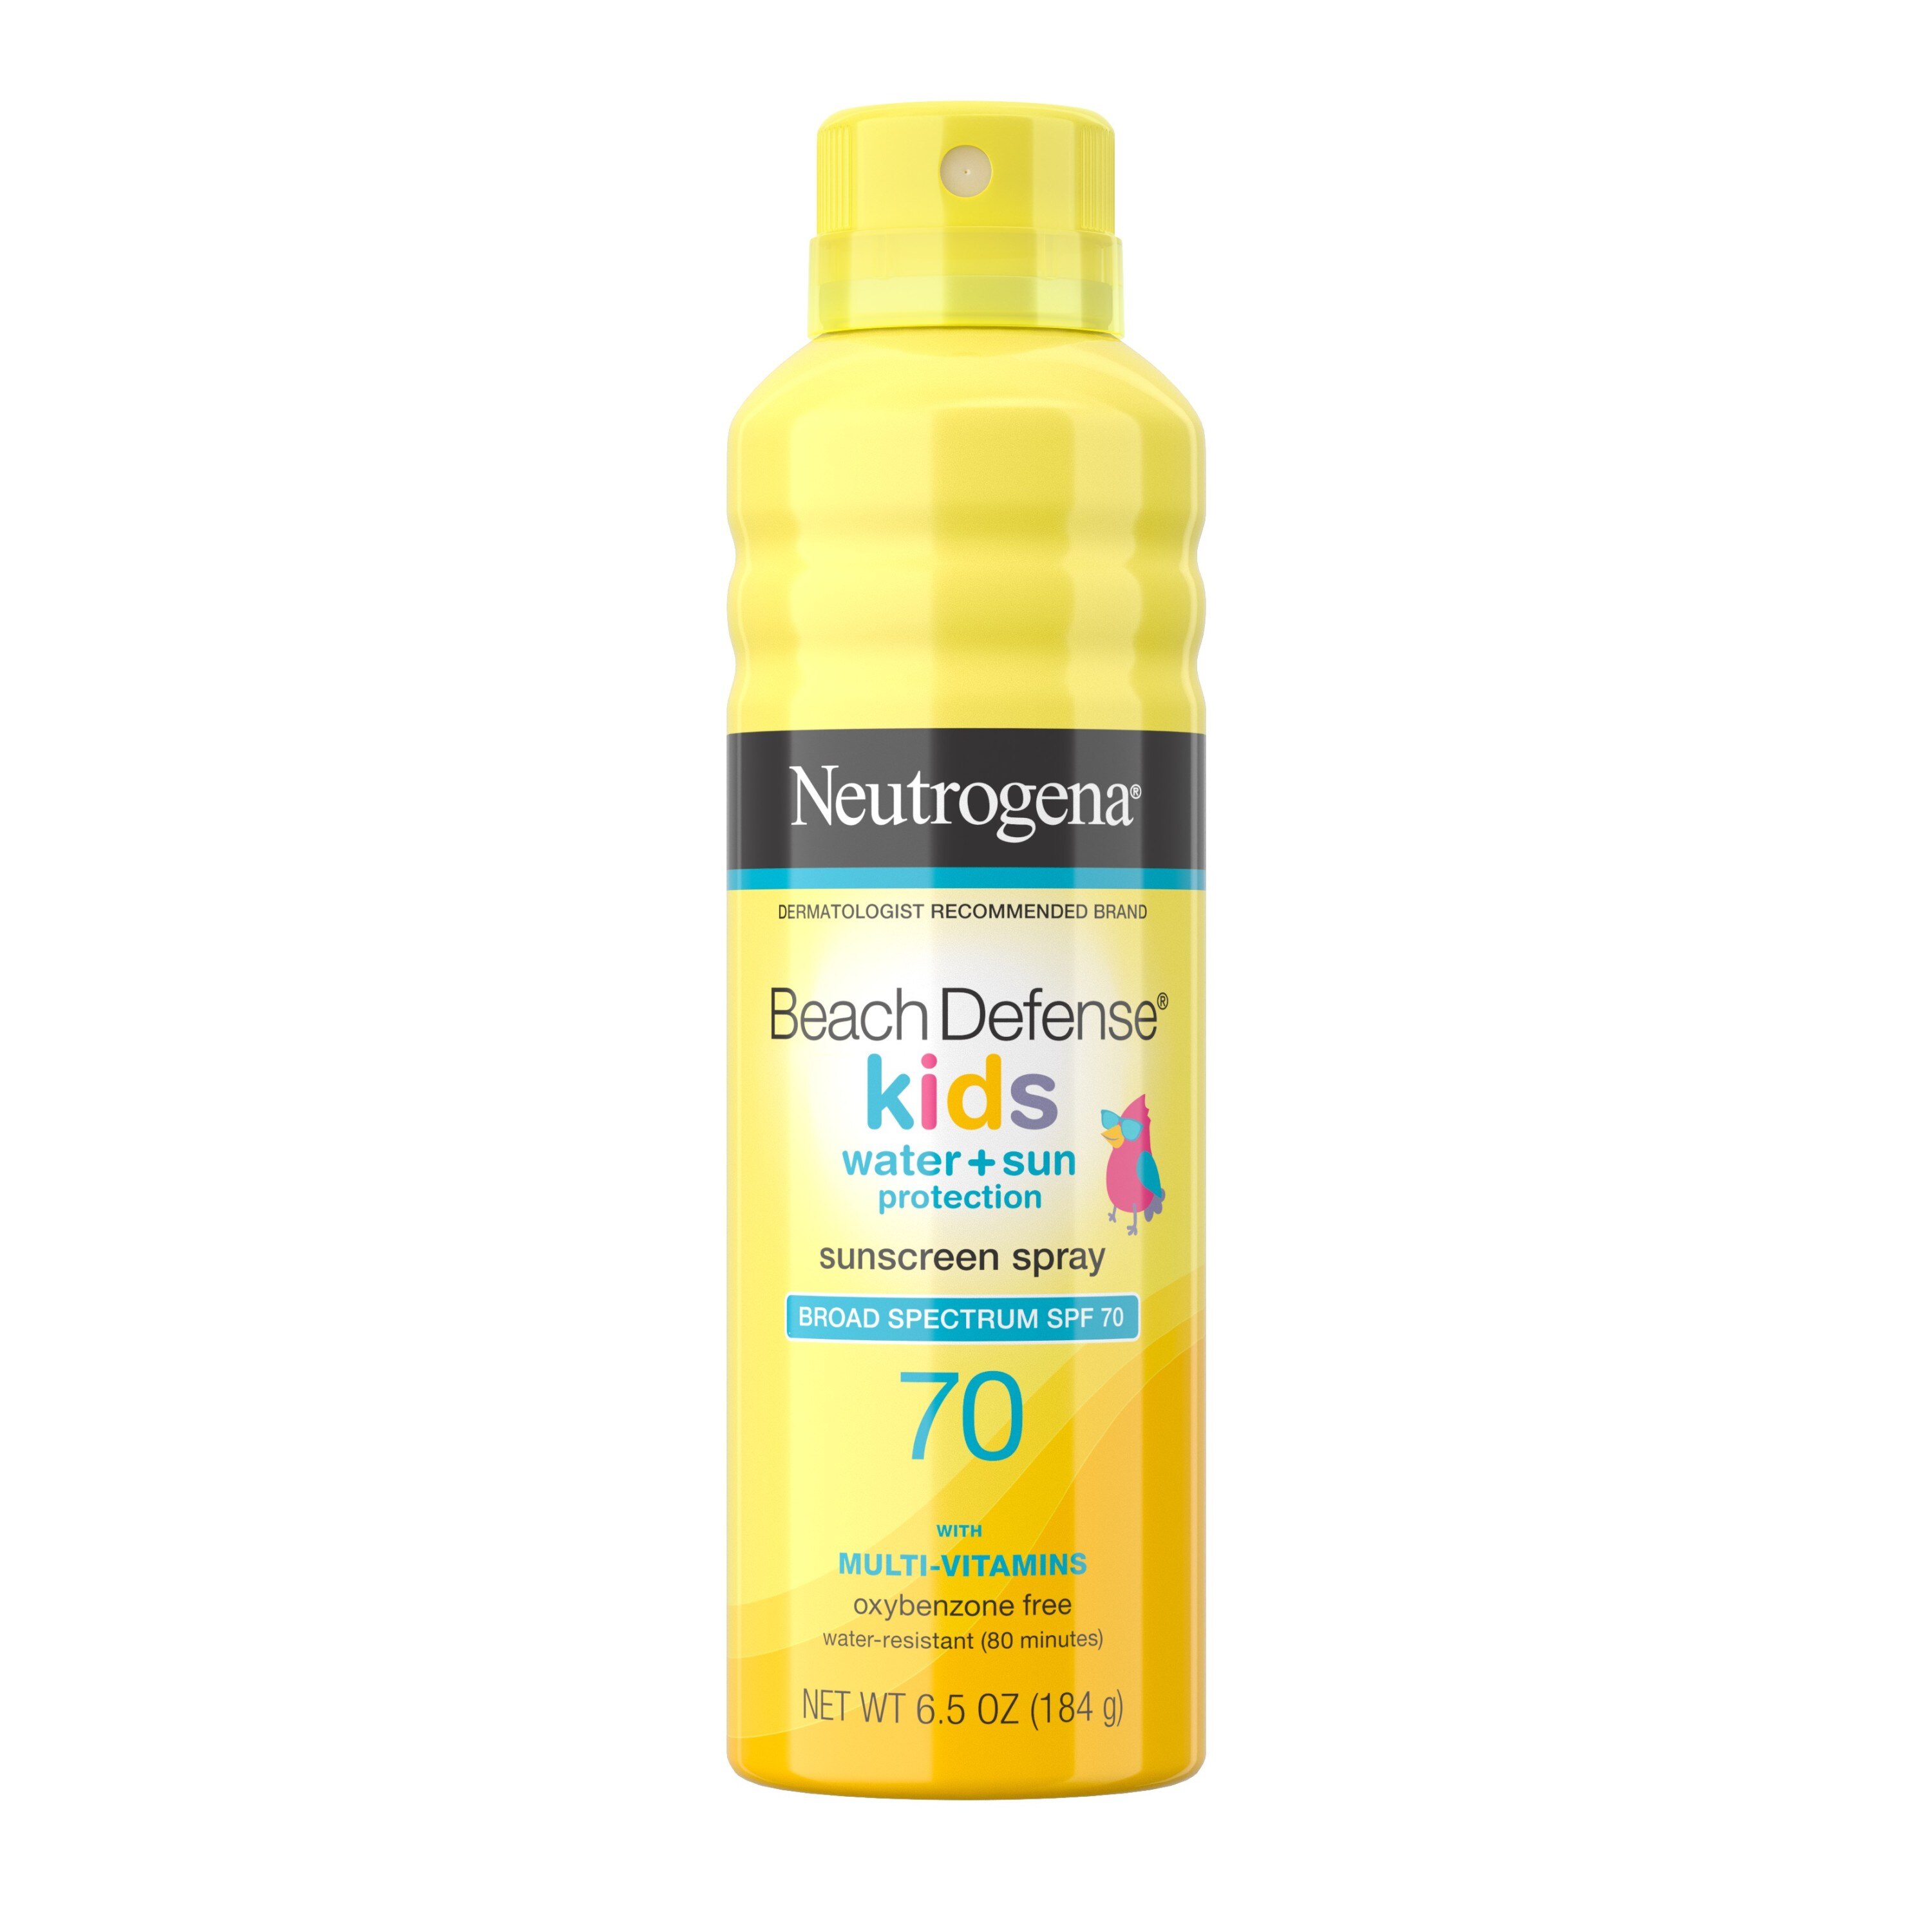 Neutrogena Beach Defense Kids Sunscreen Spray, SPF 70, 6.5 oz